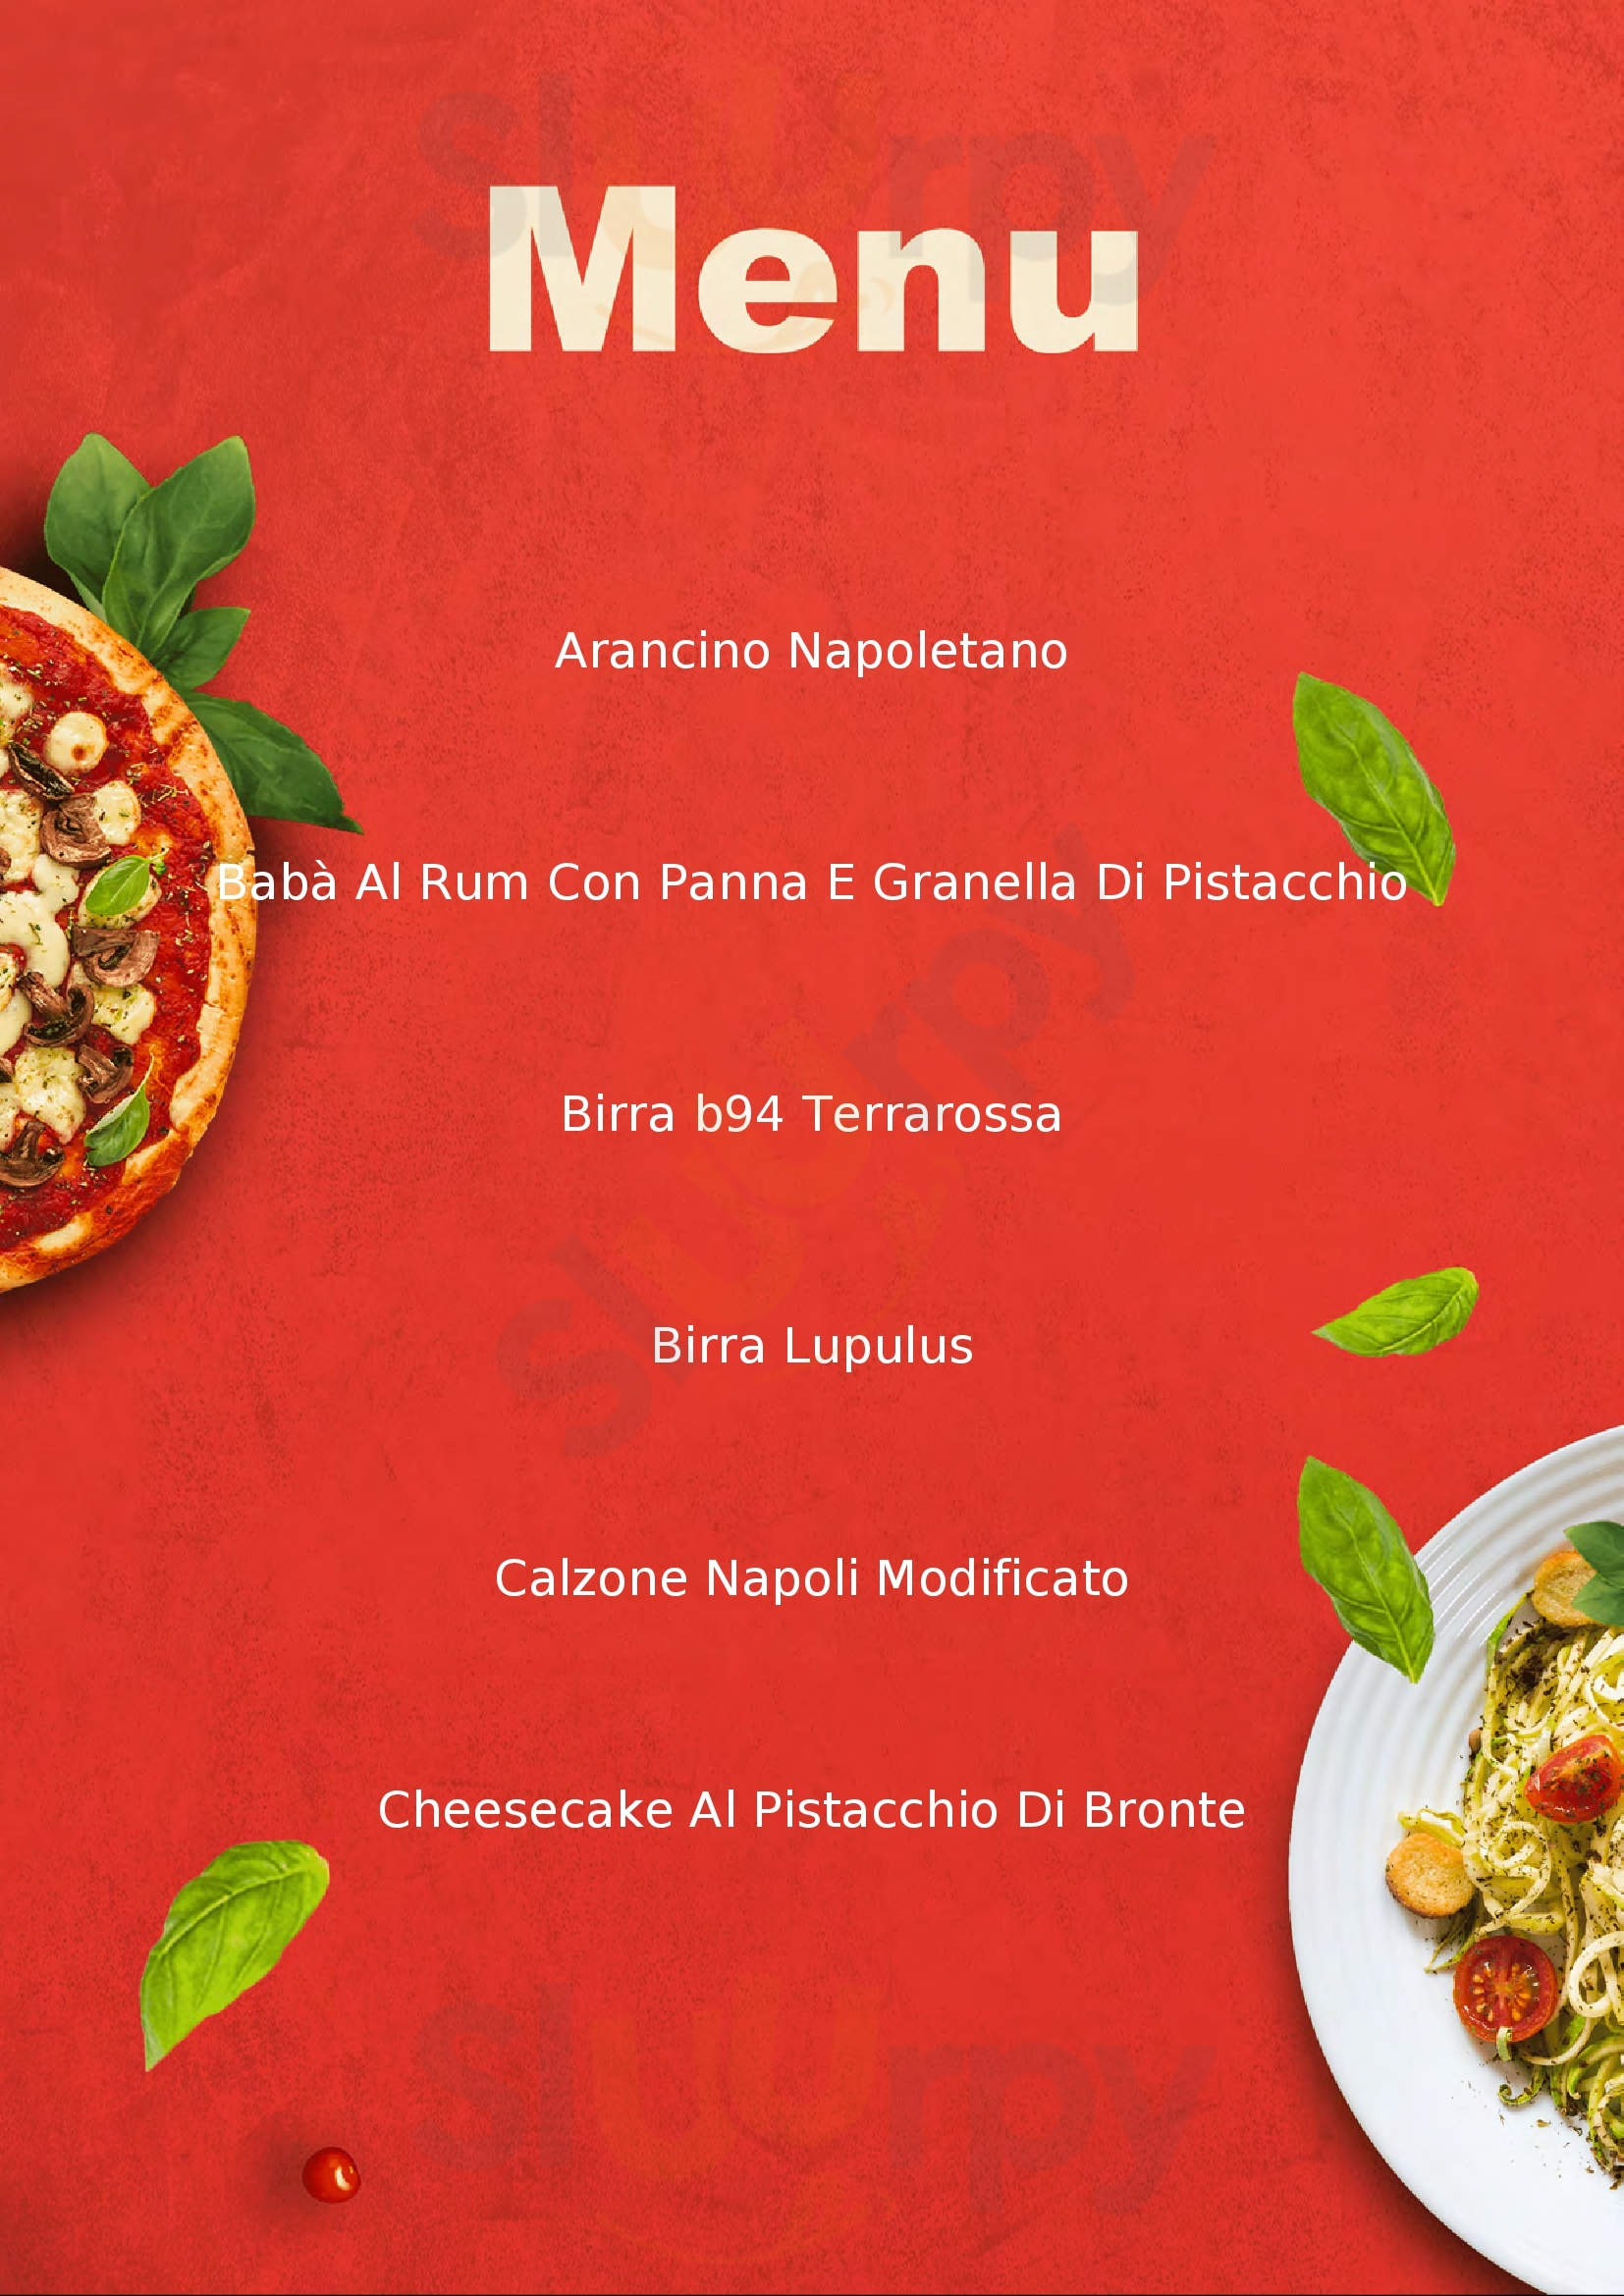 Don Ciro - Pizza Napoletana Aradeo menù 1 pagina